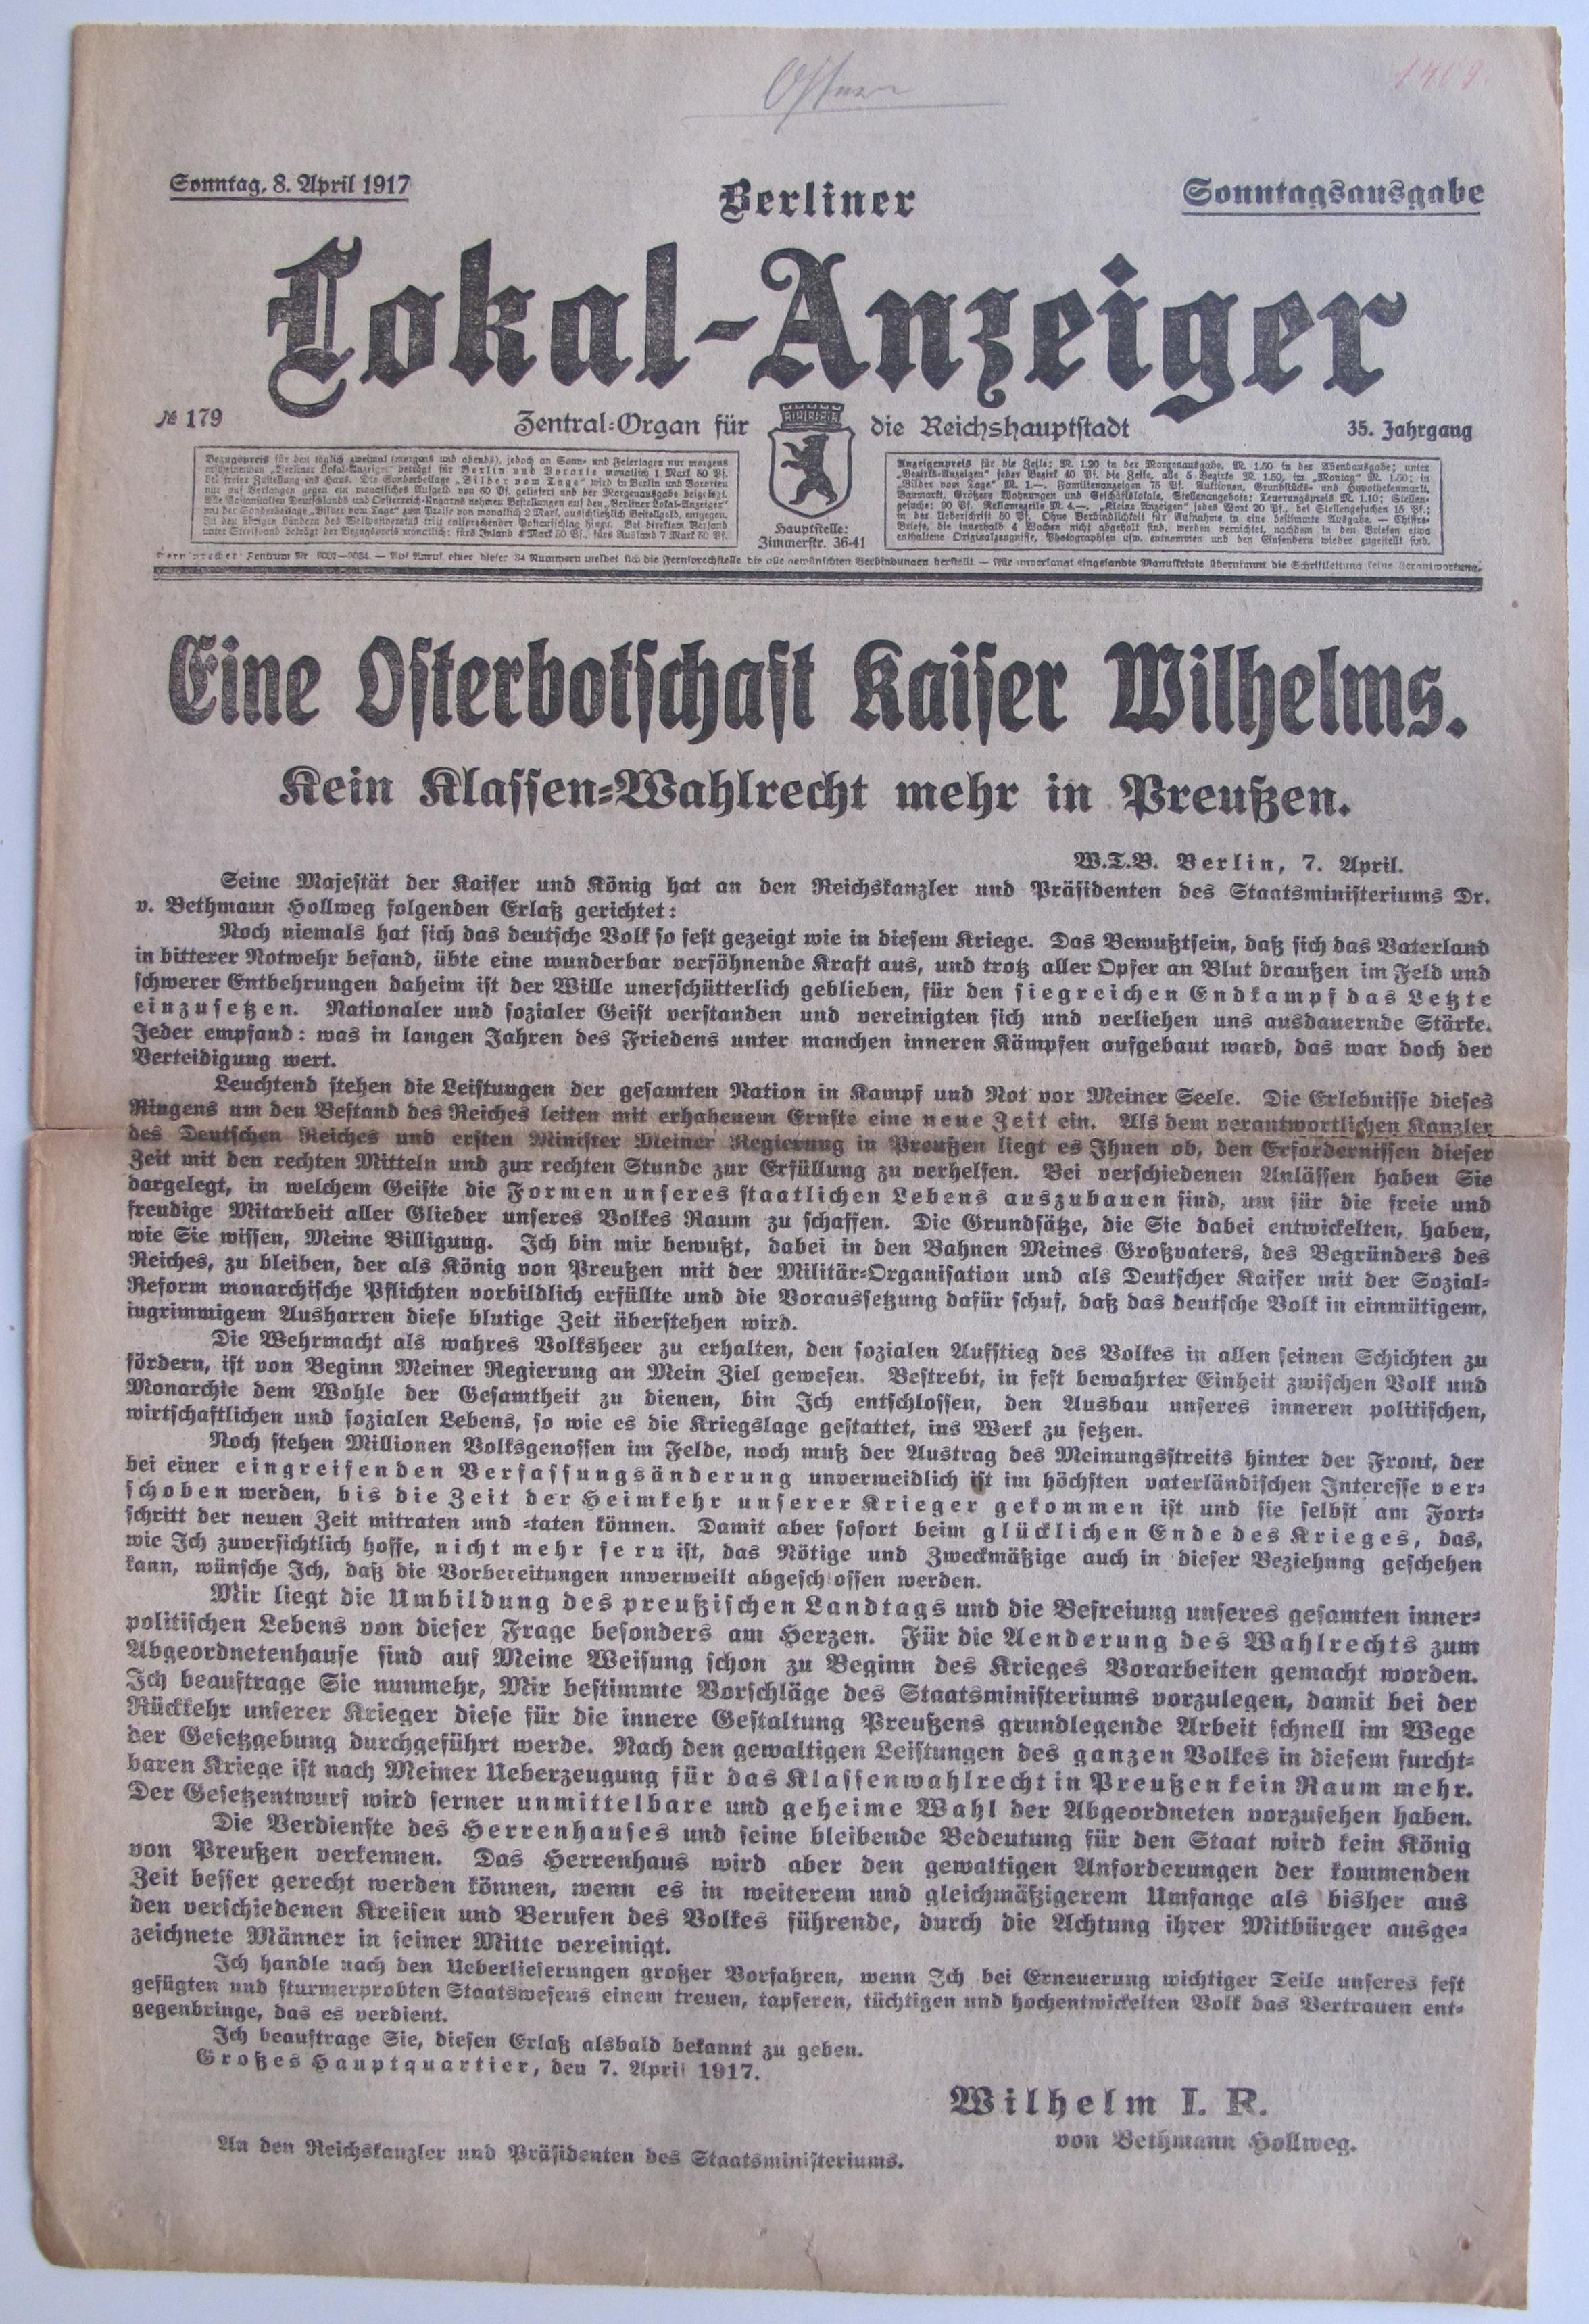 Tageszeitung "Berliner Lokal-Anzeiger" mit dem Wortlaut der Osterbotschaft von Kaiser Wilhelm II., 8. April 1917